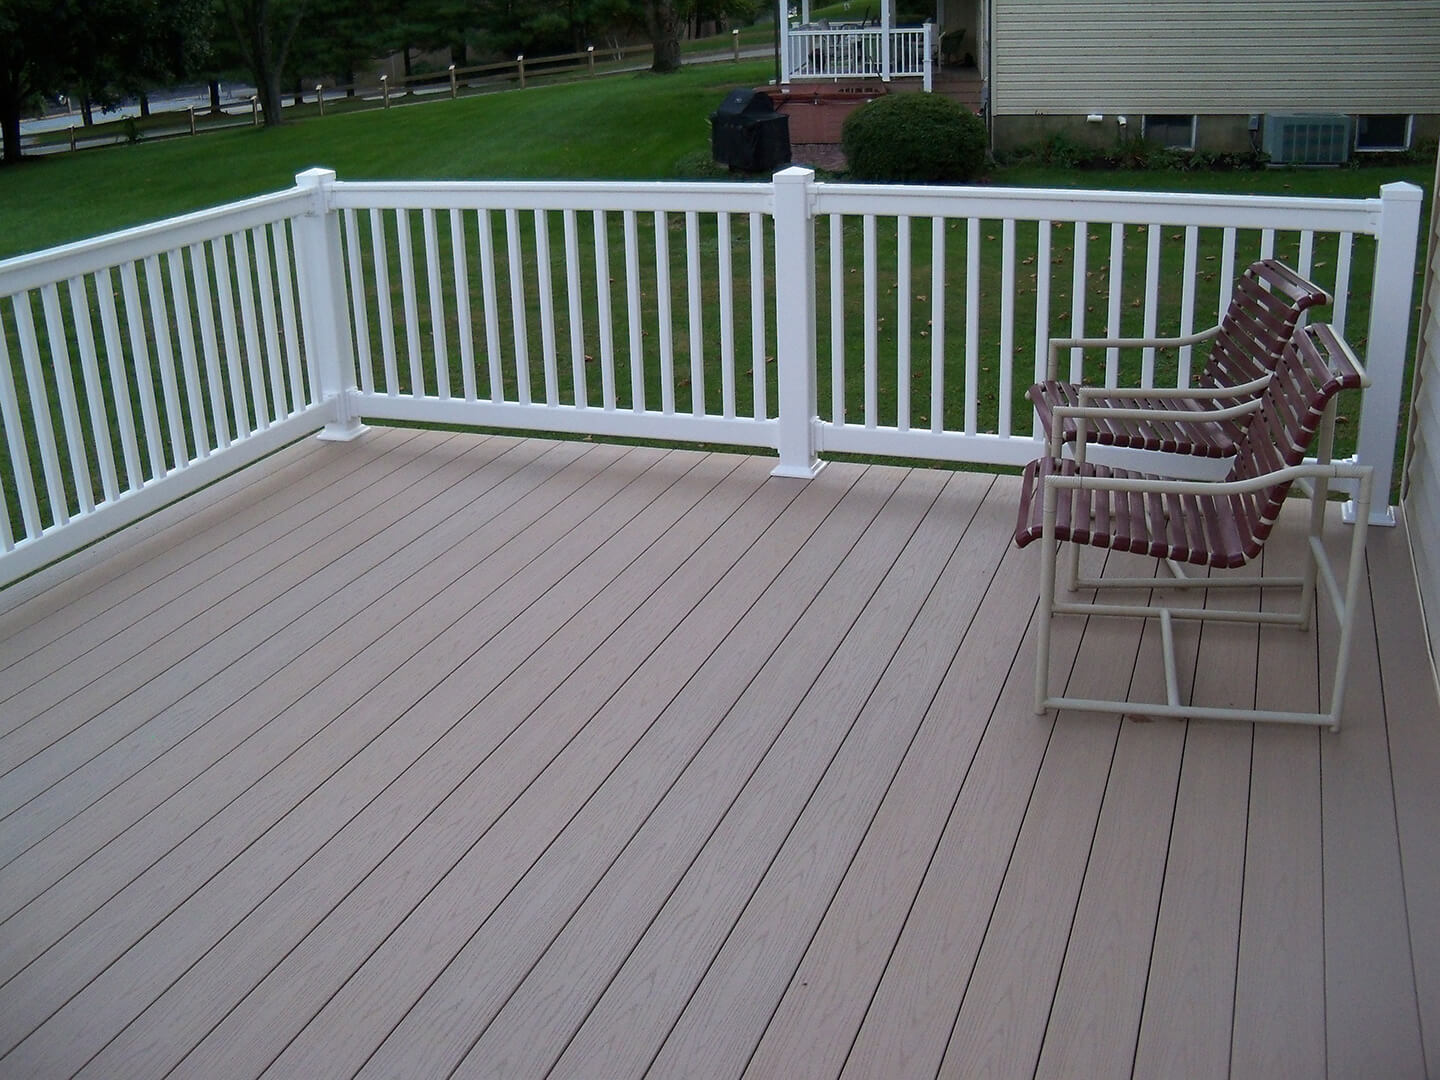 azek deck with white vinyl railing all around deck